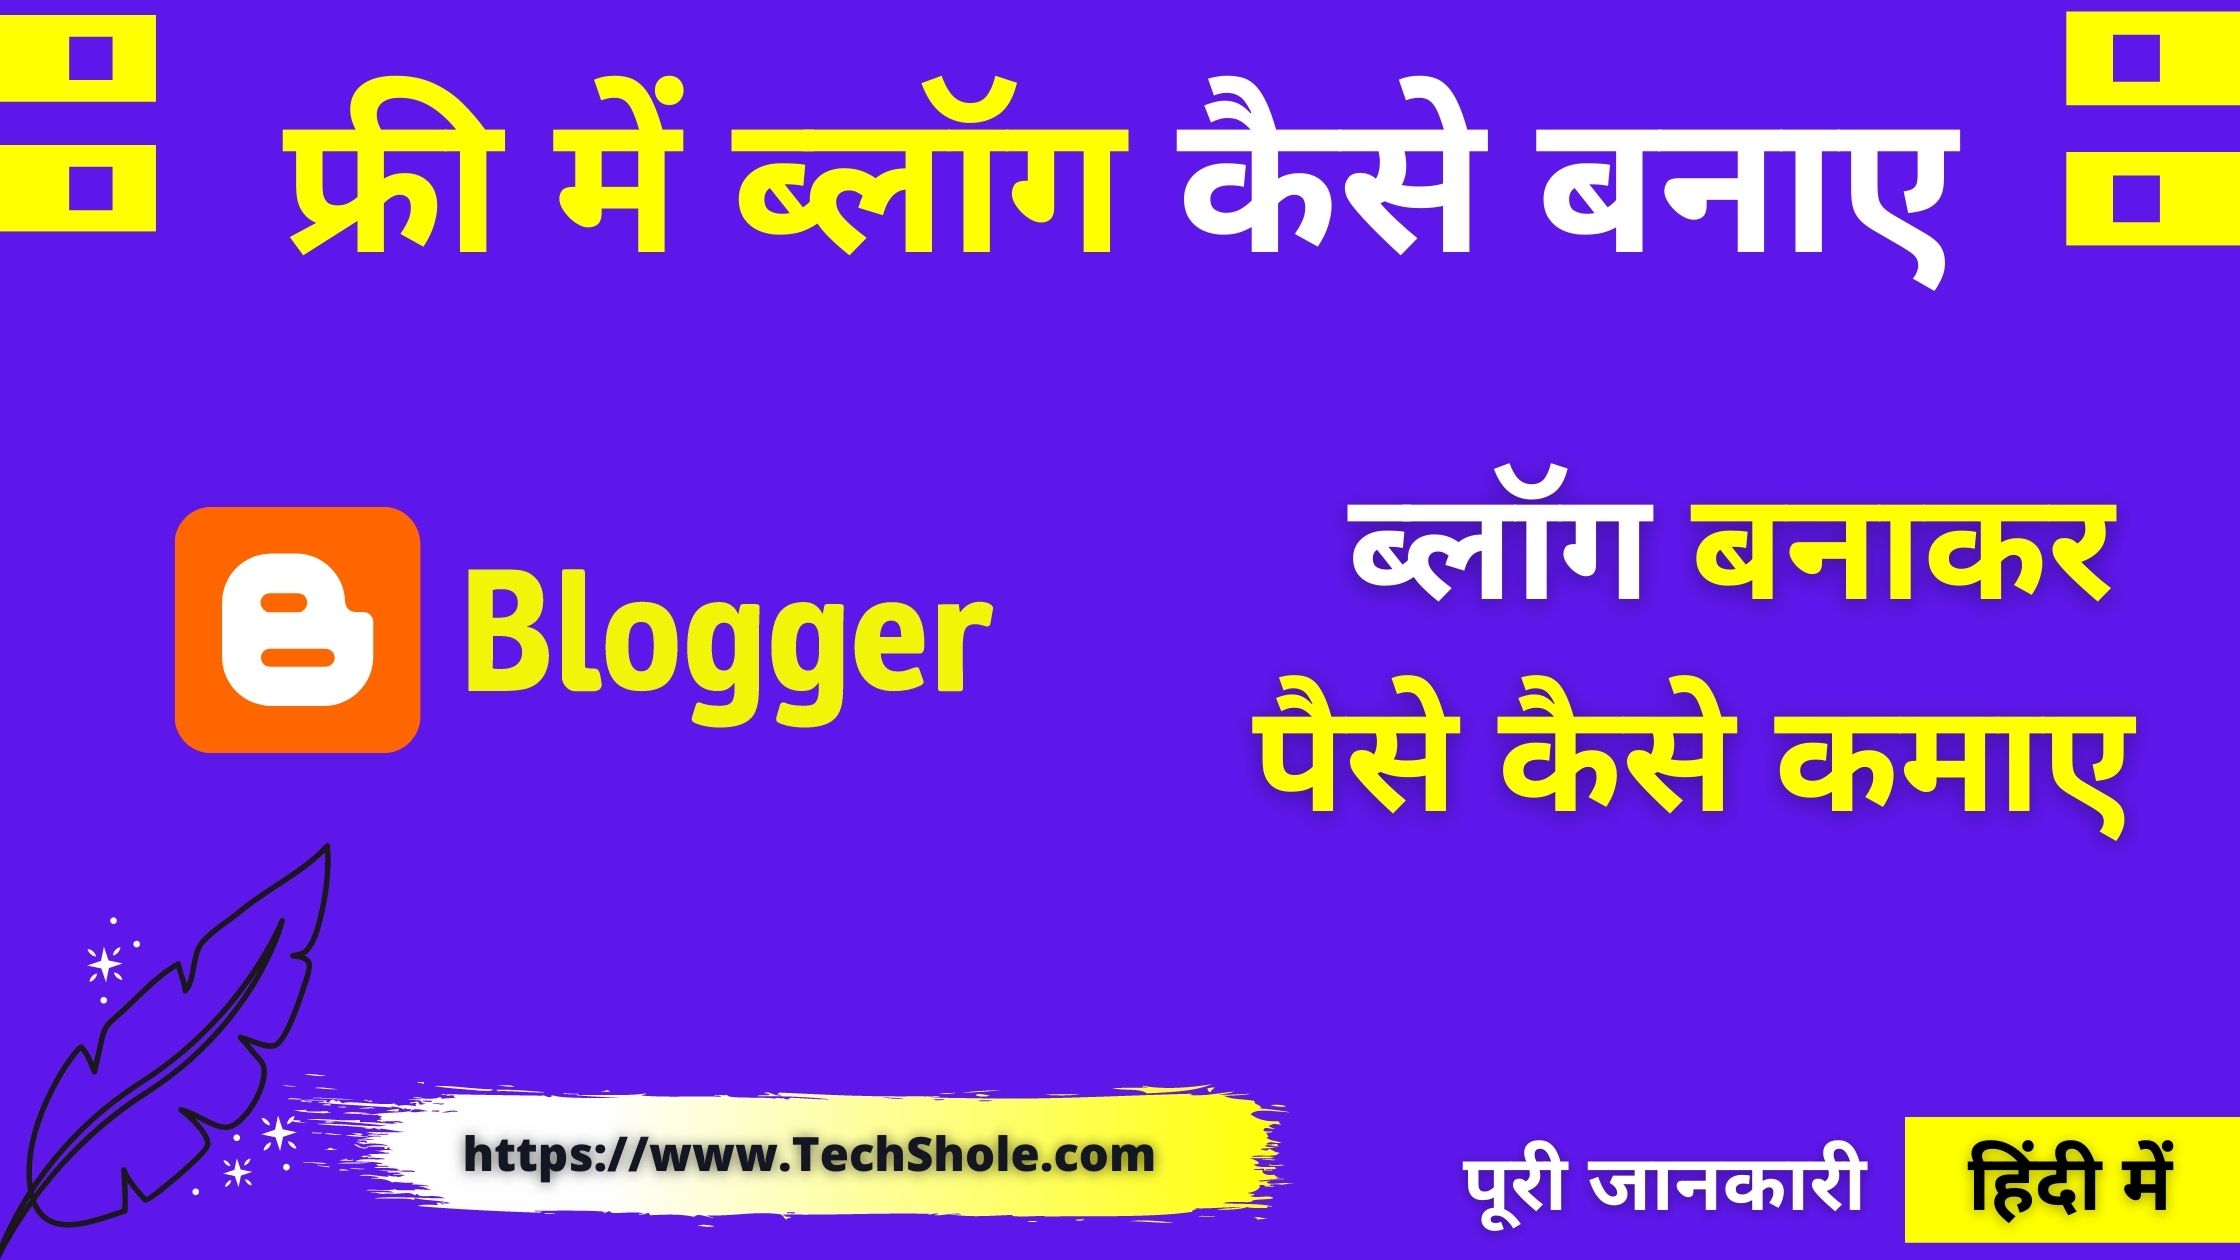 ब्लॉग कैसे बनाए – फ्री गूगल पर ब्लॉग बनाकर पैसे कमाए - Blog Kaise Banaye In Hindi